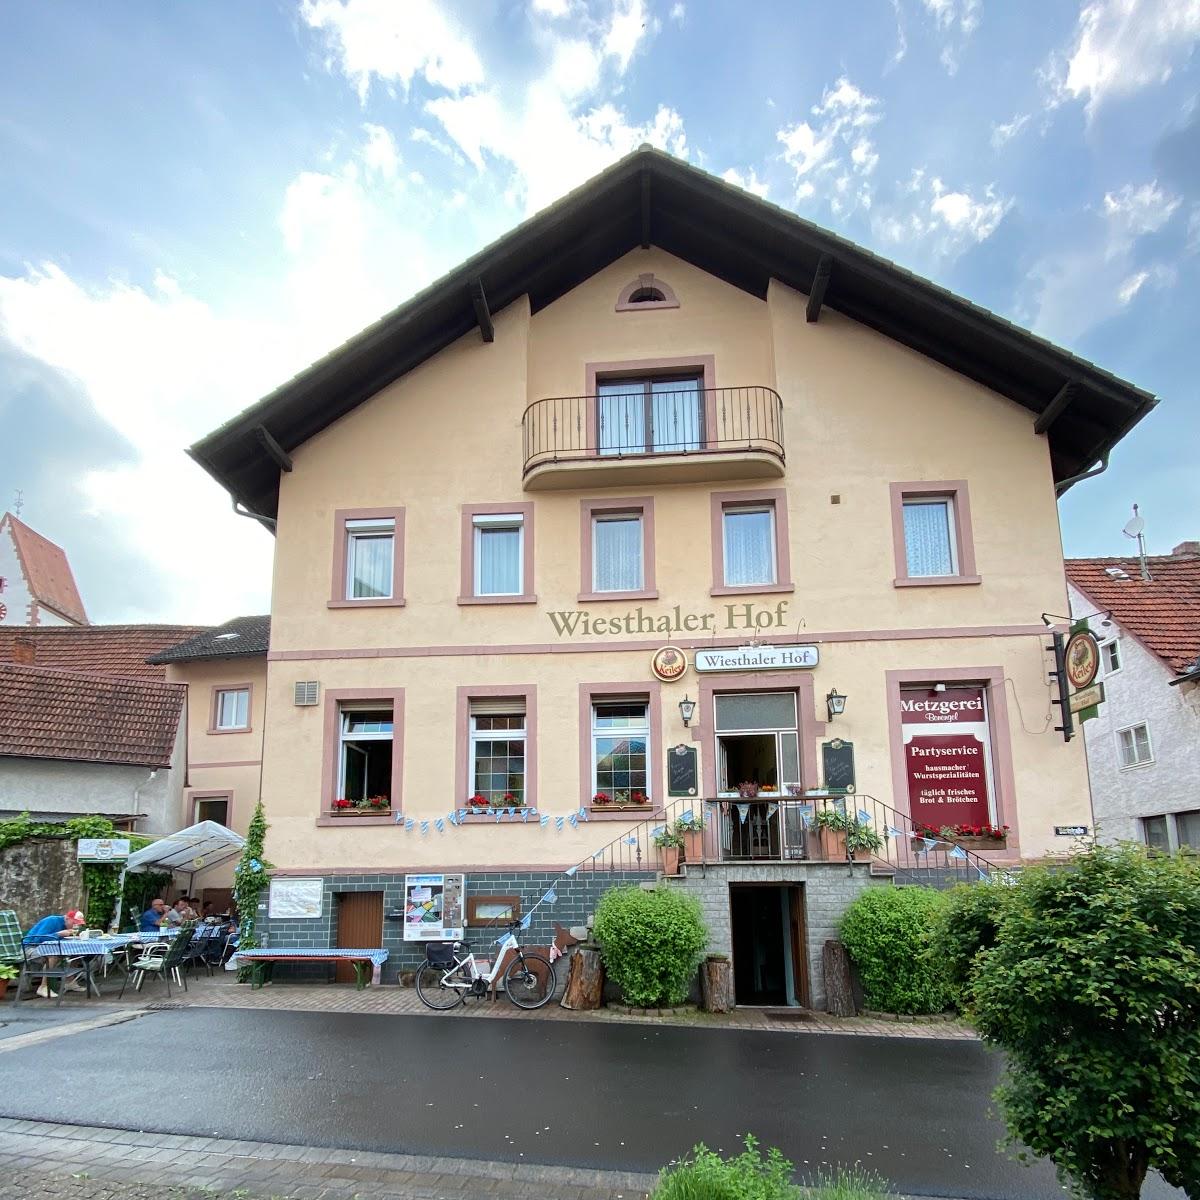 Restaurant "er Hof GmbH" in Wiesthal